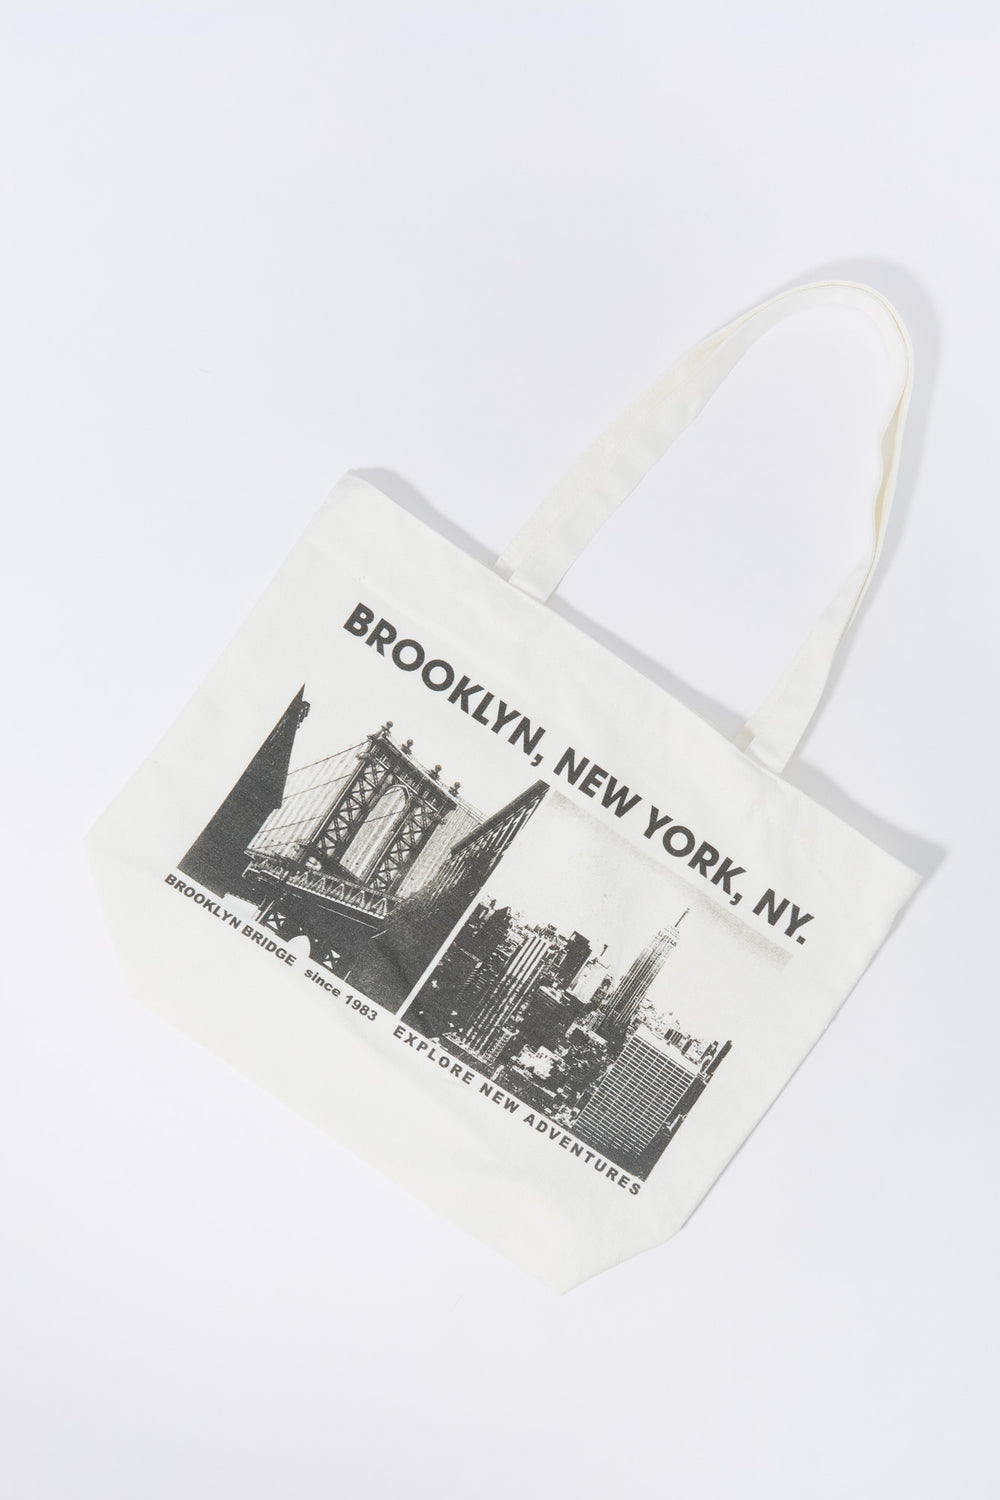 Brooklyn NY Graphic Tote Bag Brooklyn NY Graphic Tote Bag 1